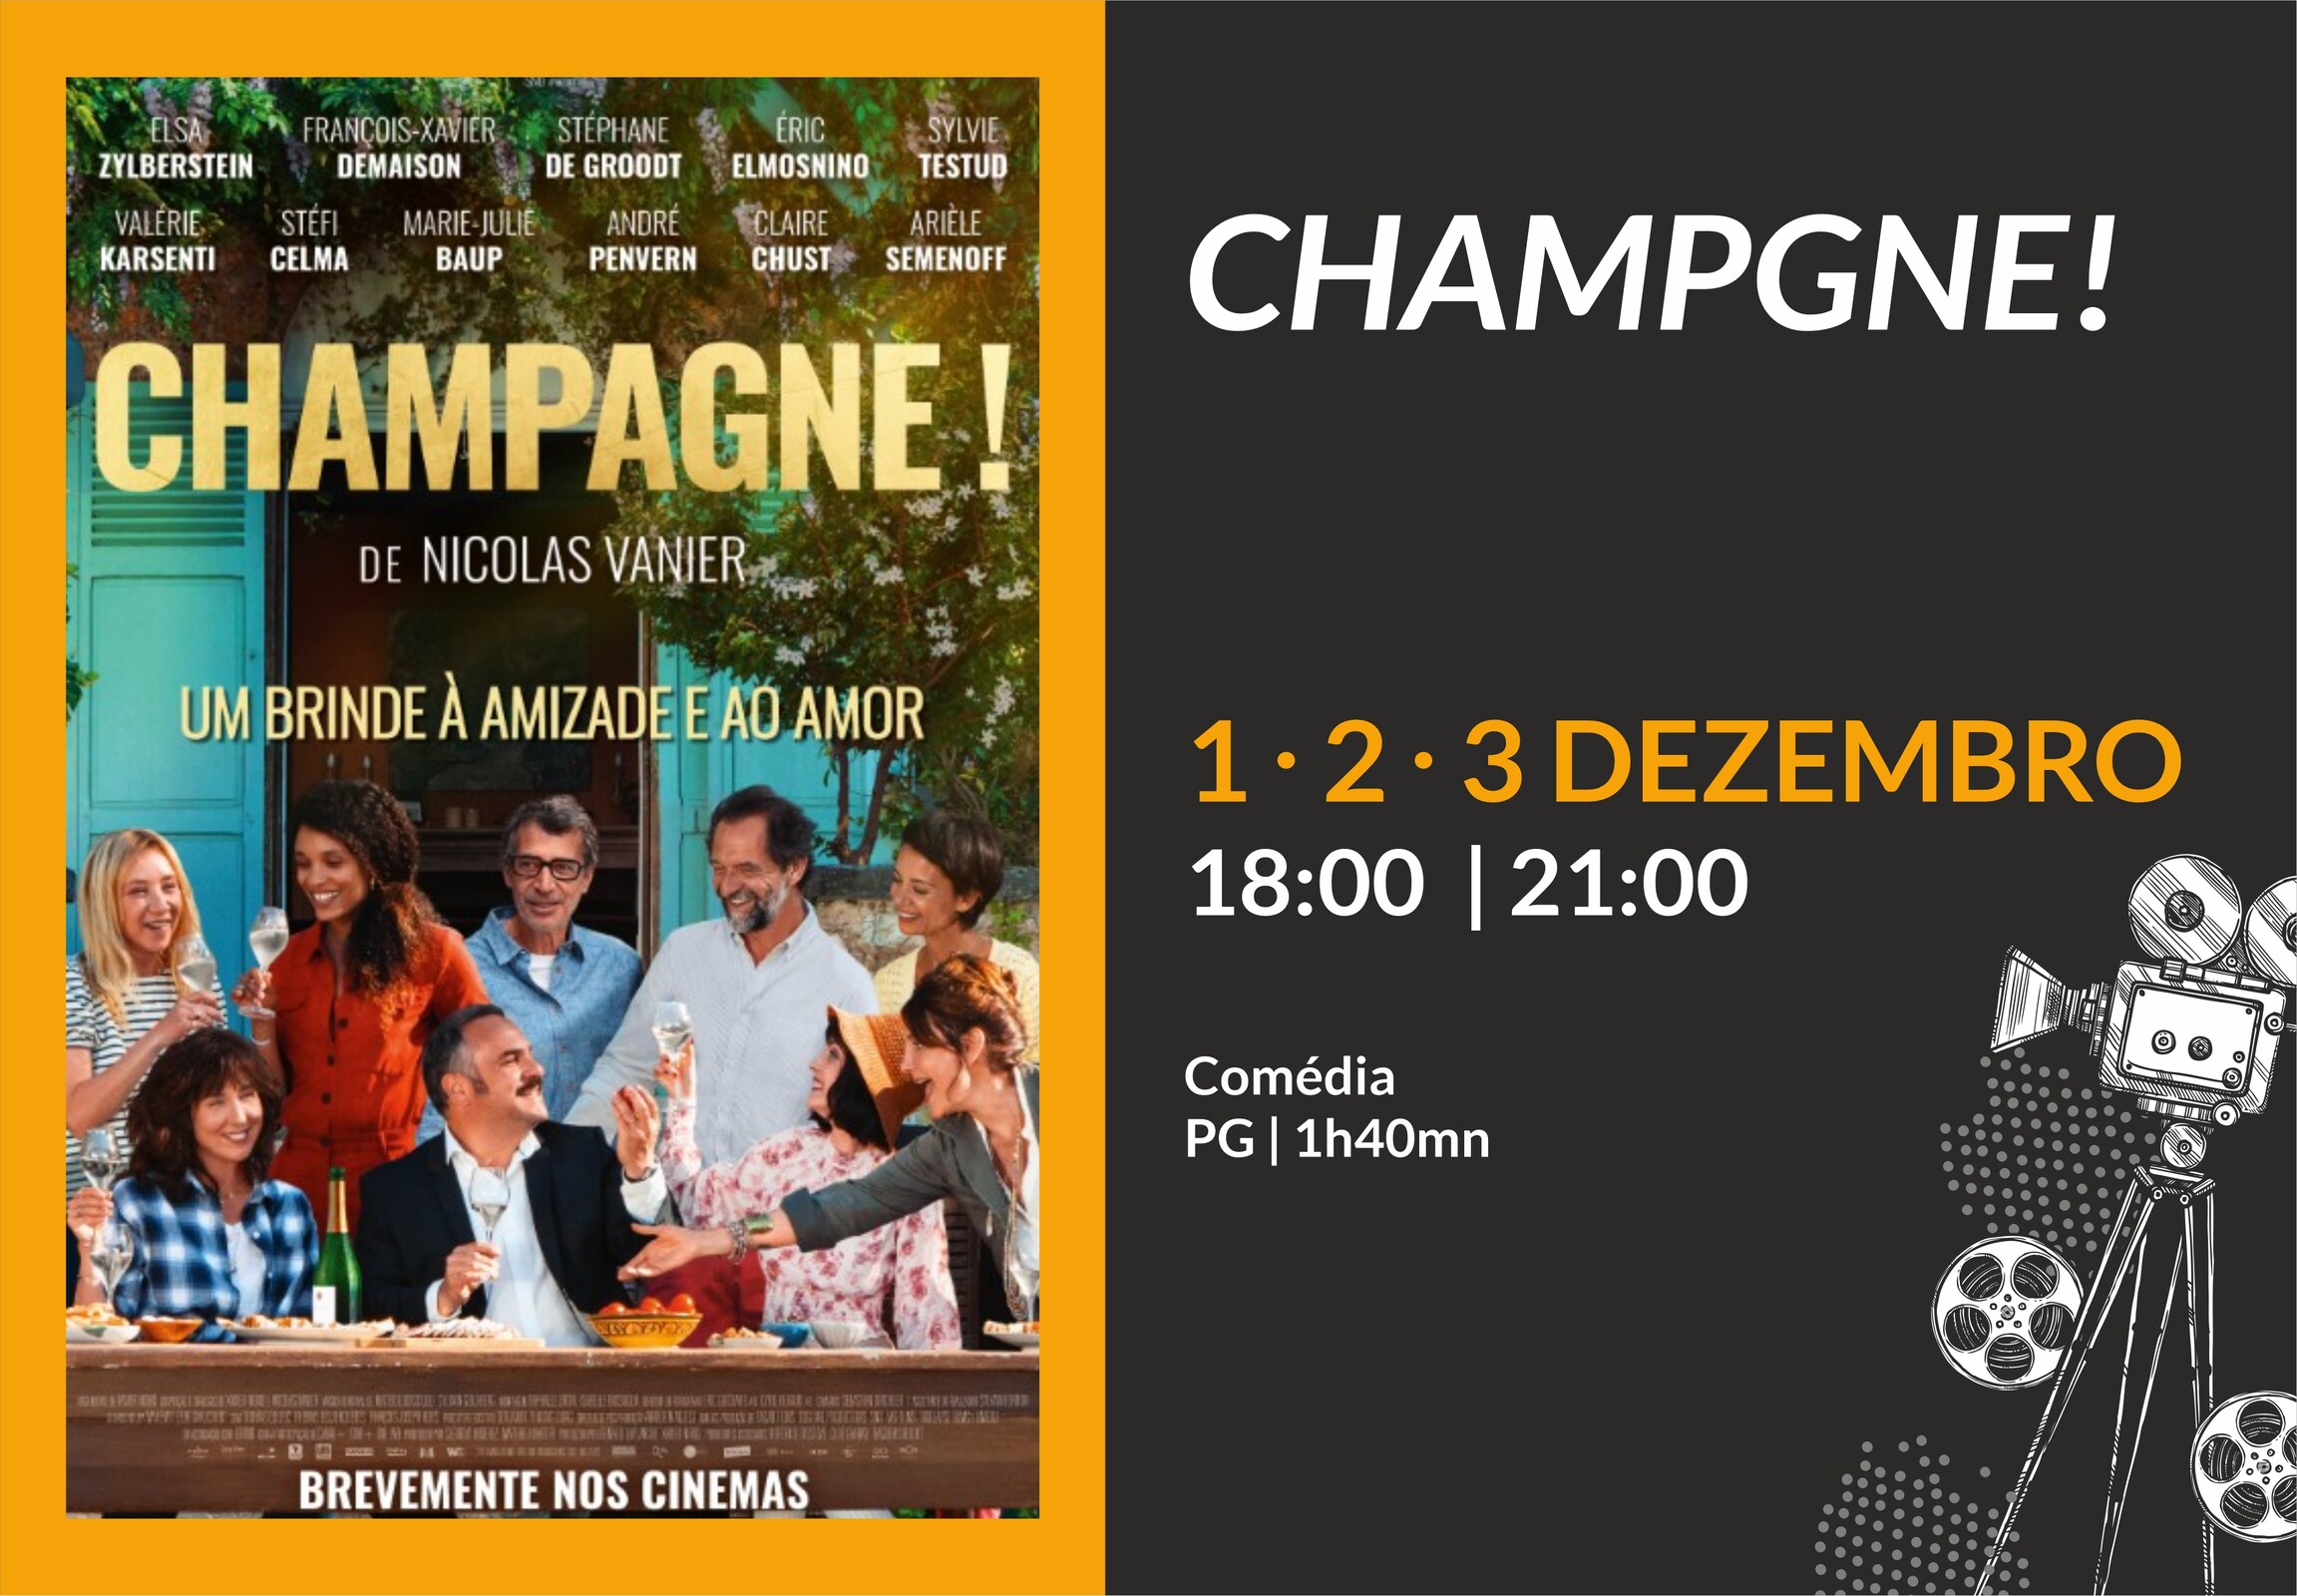 Champagne - cinema 